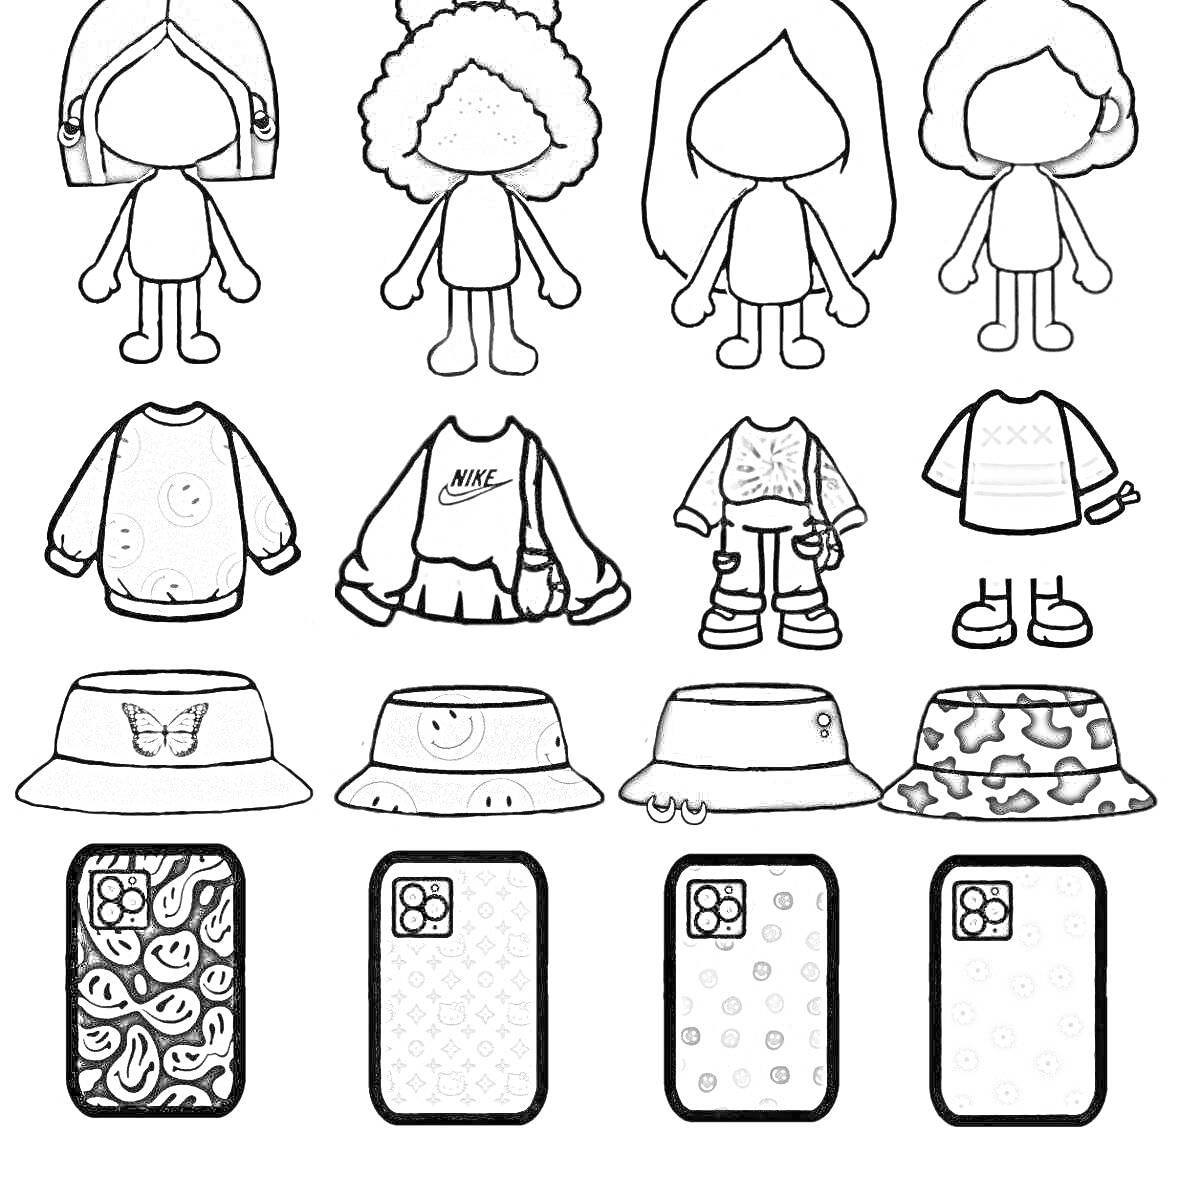 одежда персонажей Toca Boca - кофты, панамы, чехлы для телефона